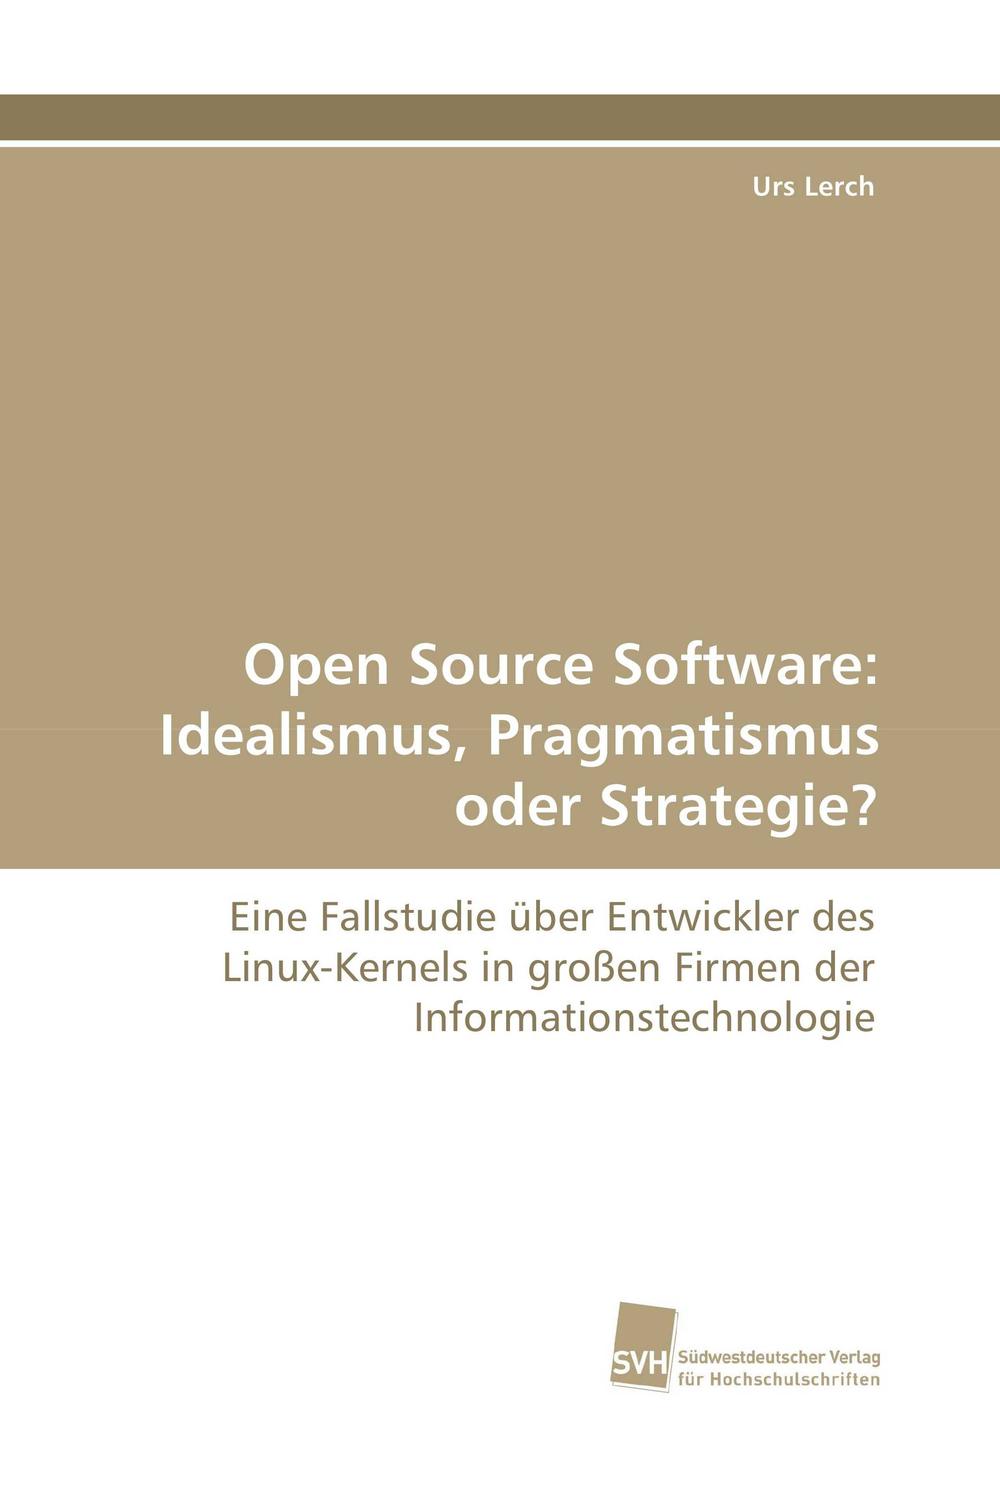 Open Source Software: Idealismus, Pragmatismus oder Strategie? - Urs Lerch